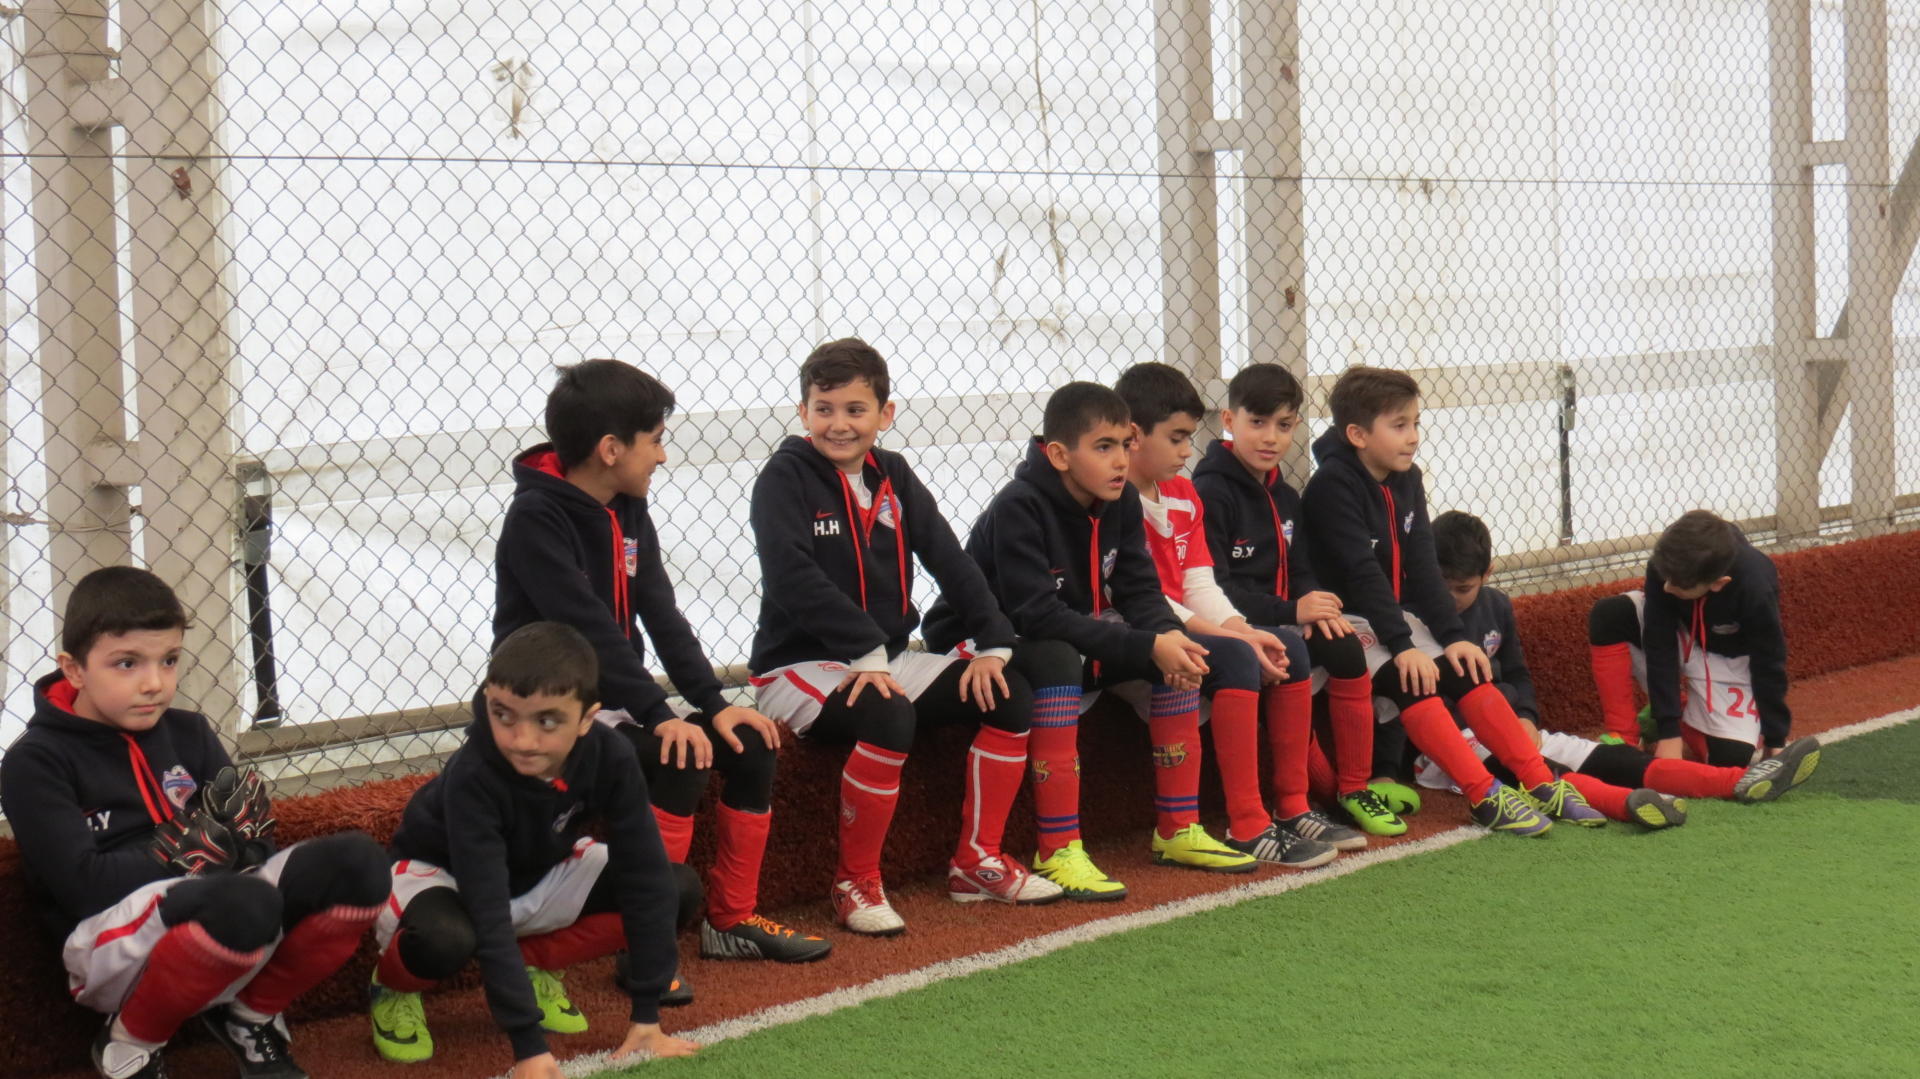 Azfar Futbol məktəbinin sıralarına hər gün yeni yetirmələr qoşulmaqdadır (FOTO/VİDEO) - Gallery Image